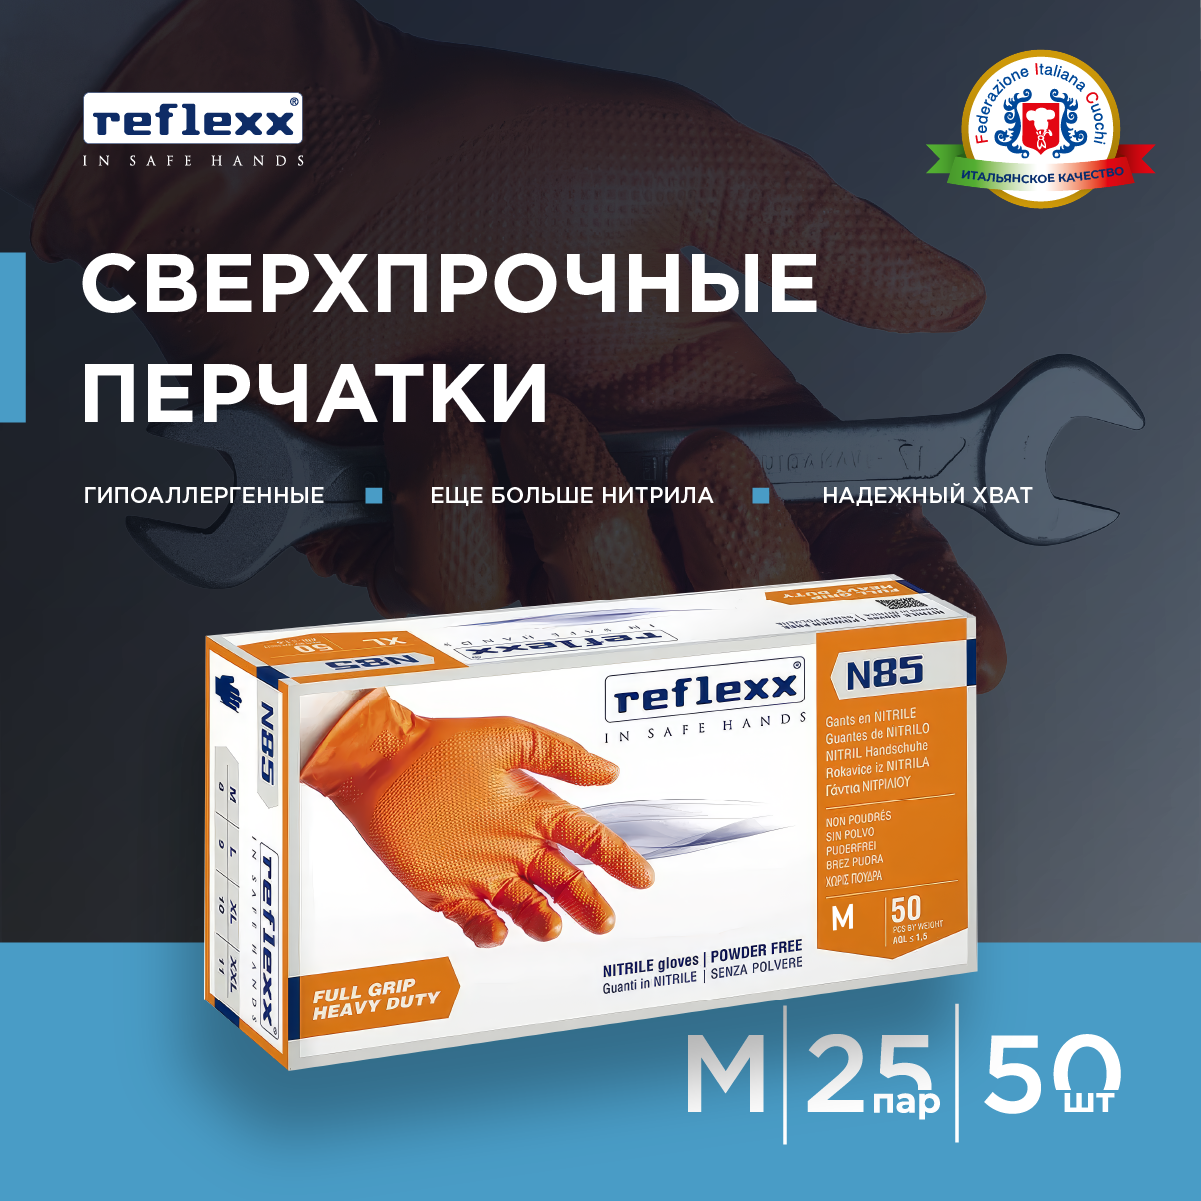 Reflexx Nitrile gloves - Сверхпрочные резиновые перчатки нитриловые. 84 гр. Толщина 02 мм.